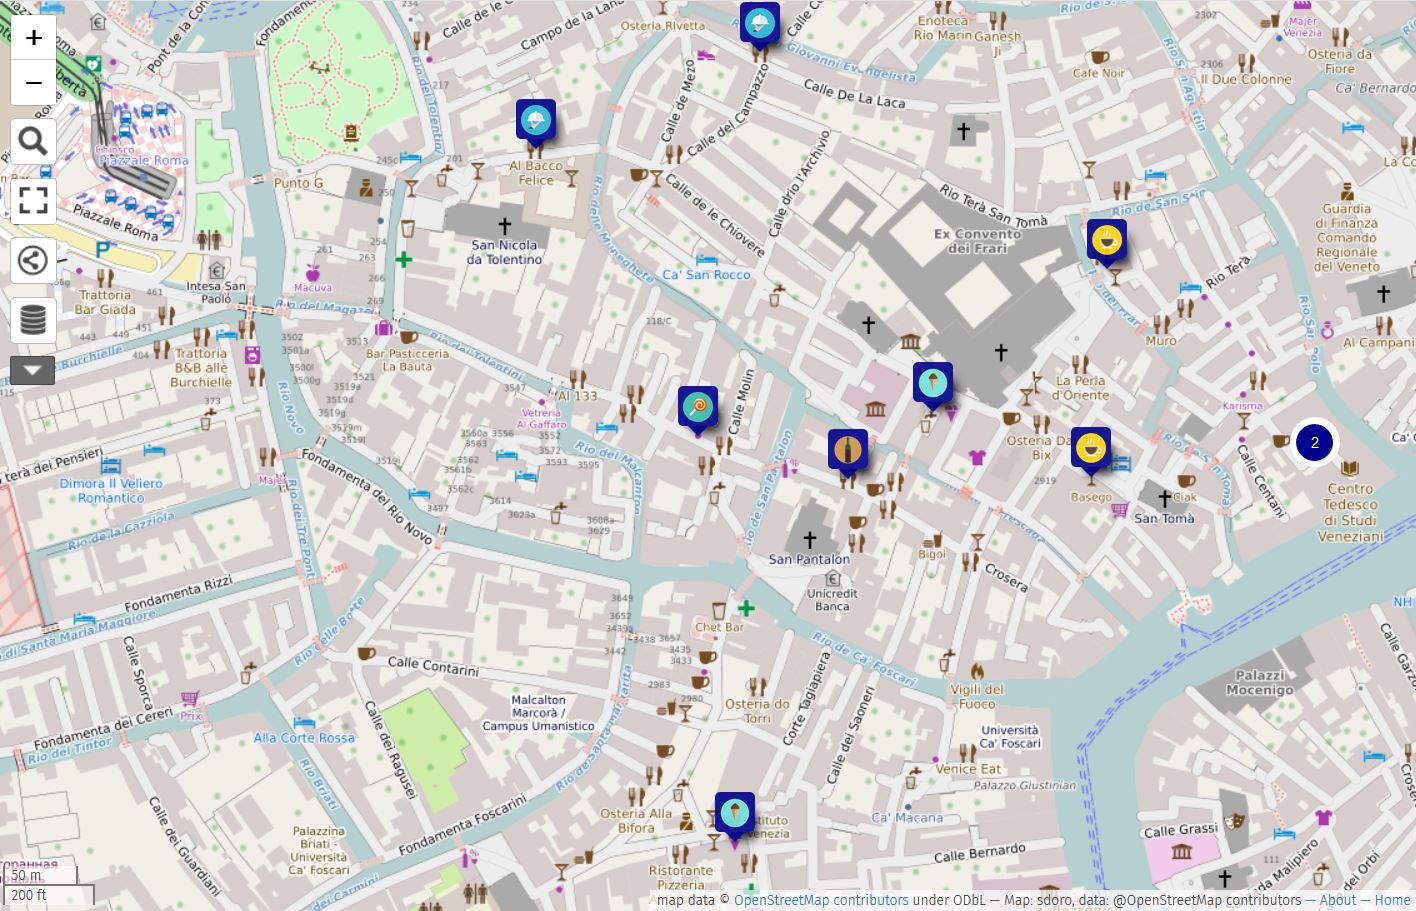 Nell'immagine: Estratto della mappa realizzata su uMap dagli studenti del Liceo Morin a Mestre, via OpenStreetMap, licenza ODbl